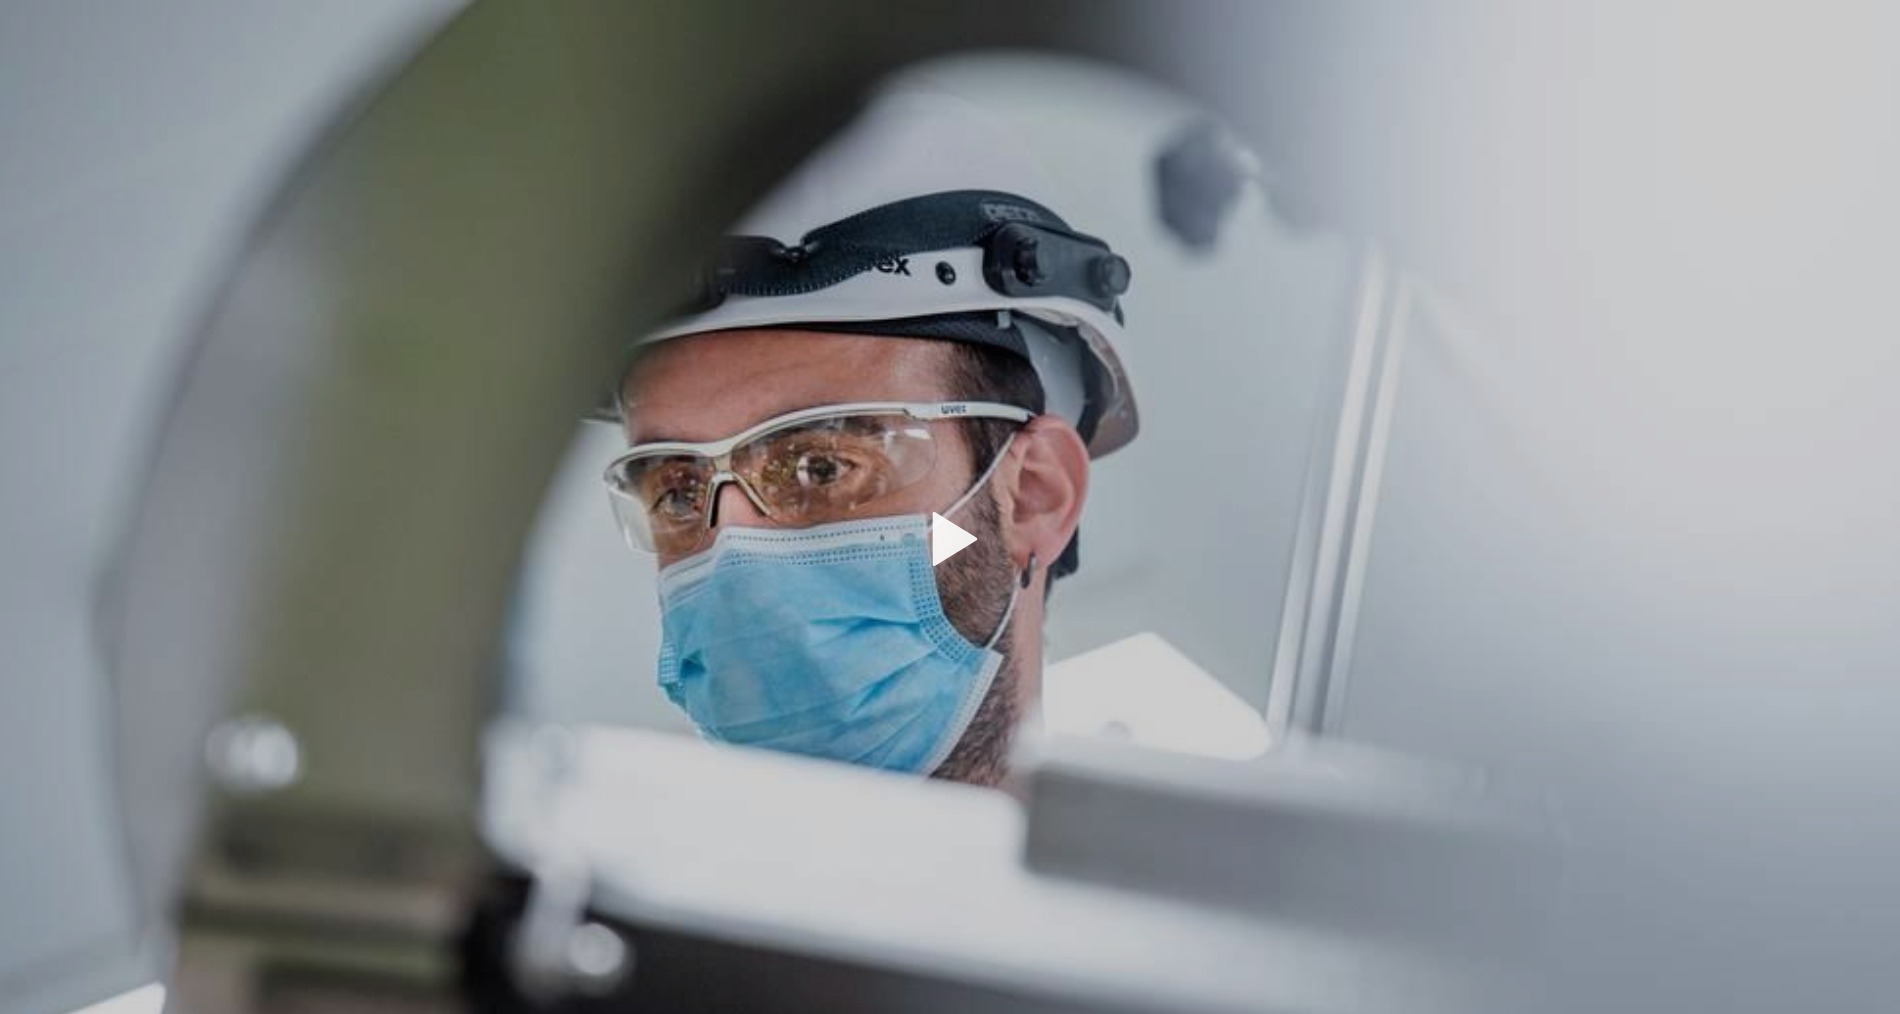 Professionista sanitario con mascherina, casco e occhiali di protezione intravisto attraverso apparecchiature mediche